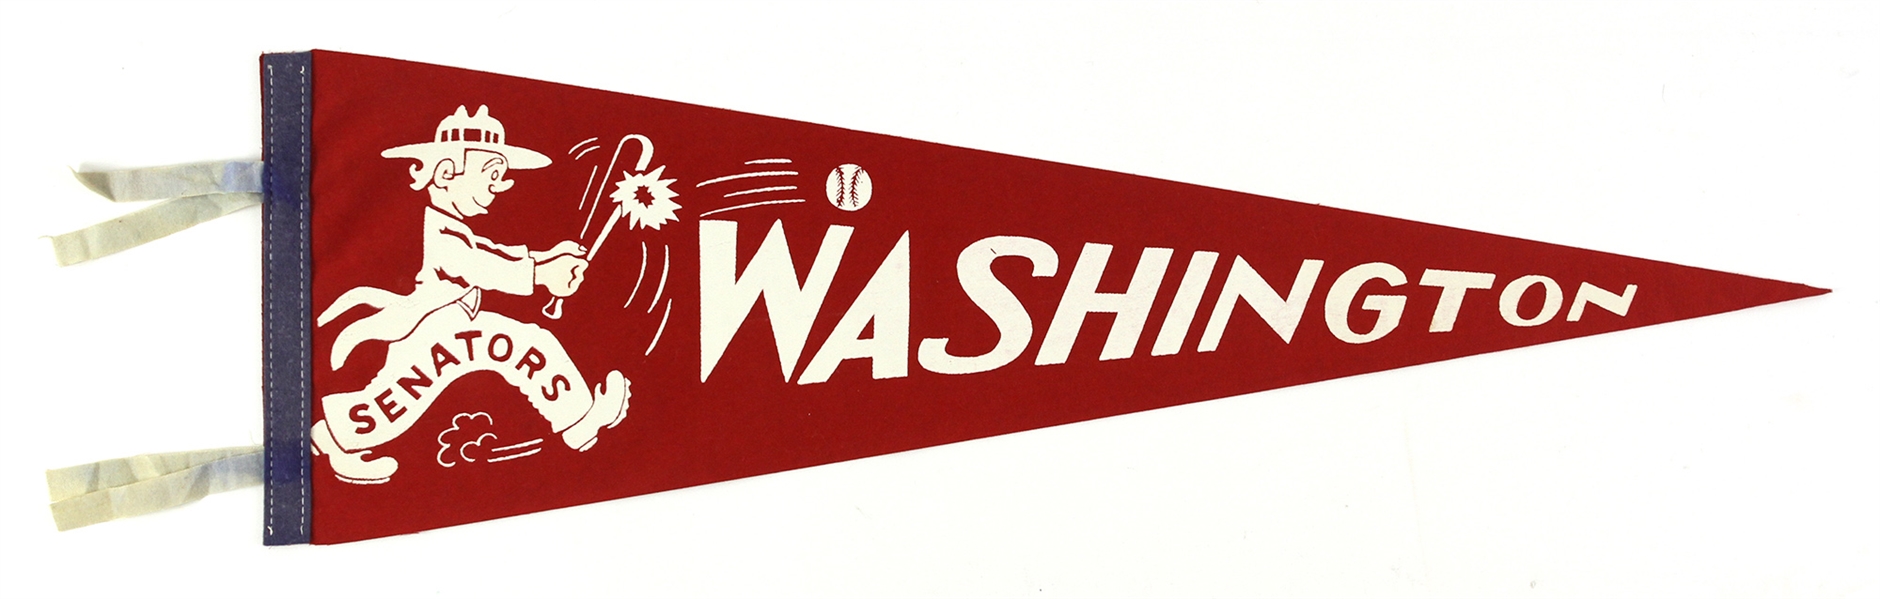 1950s Vintage Washington Senators Red 27” Pennant